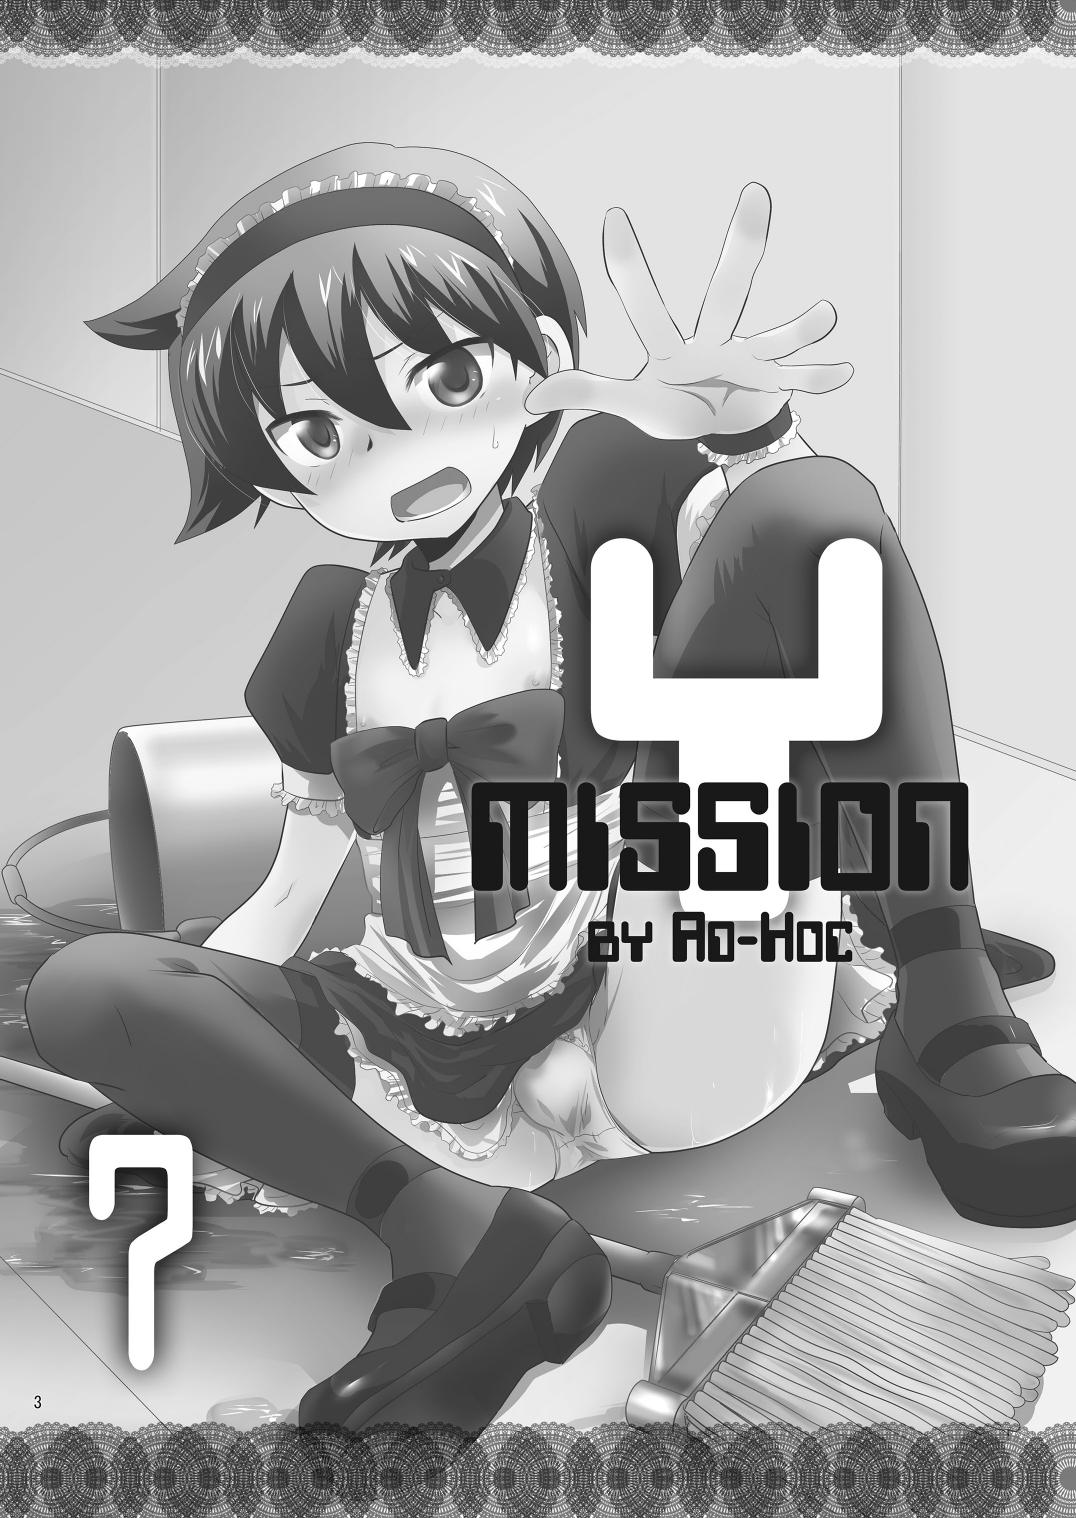 Mission Y7 2